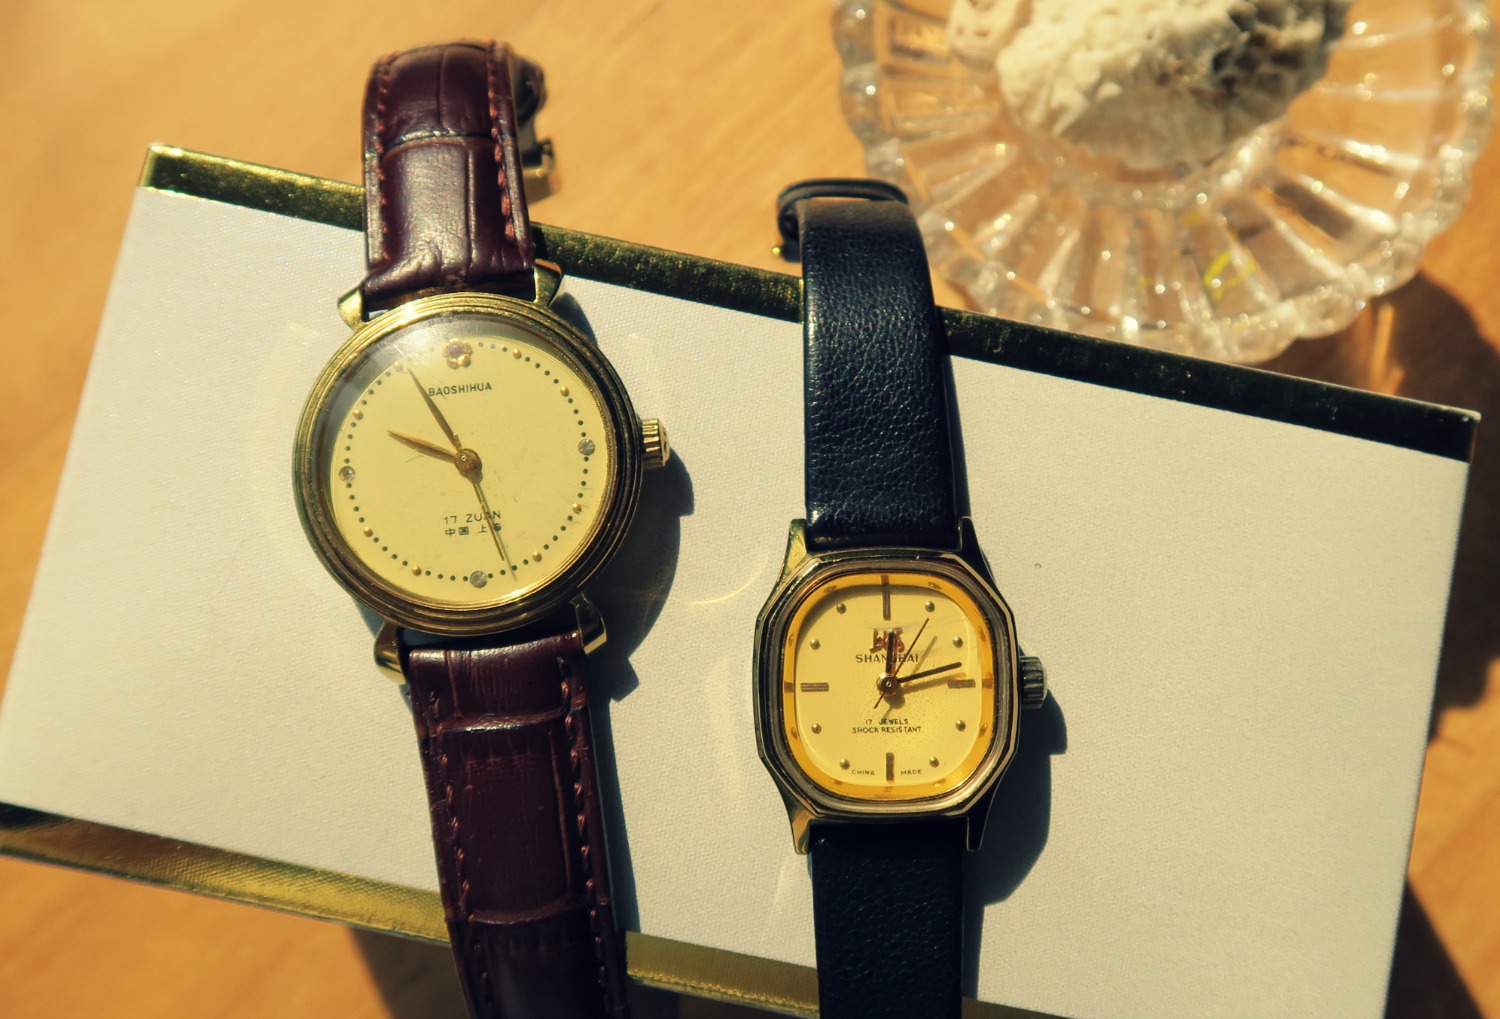 Treasure of the Week: Vintage Shanghainese watches